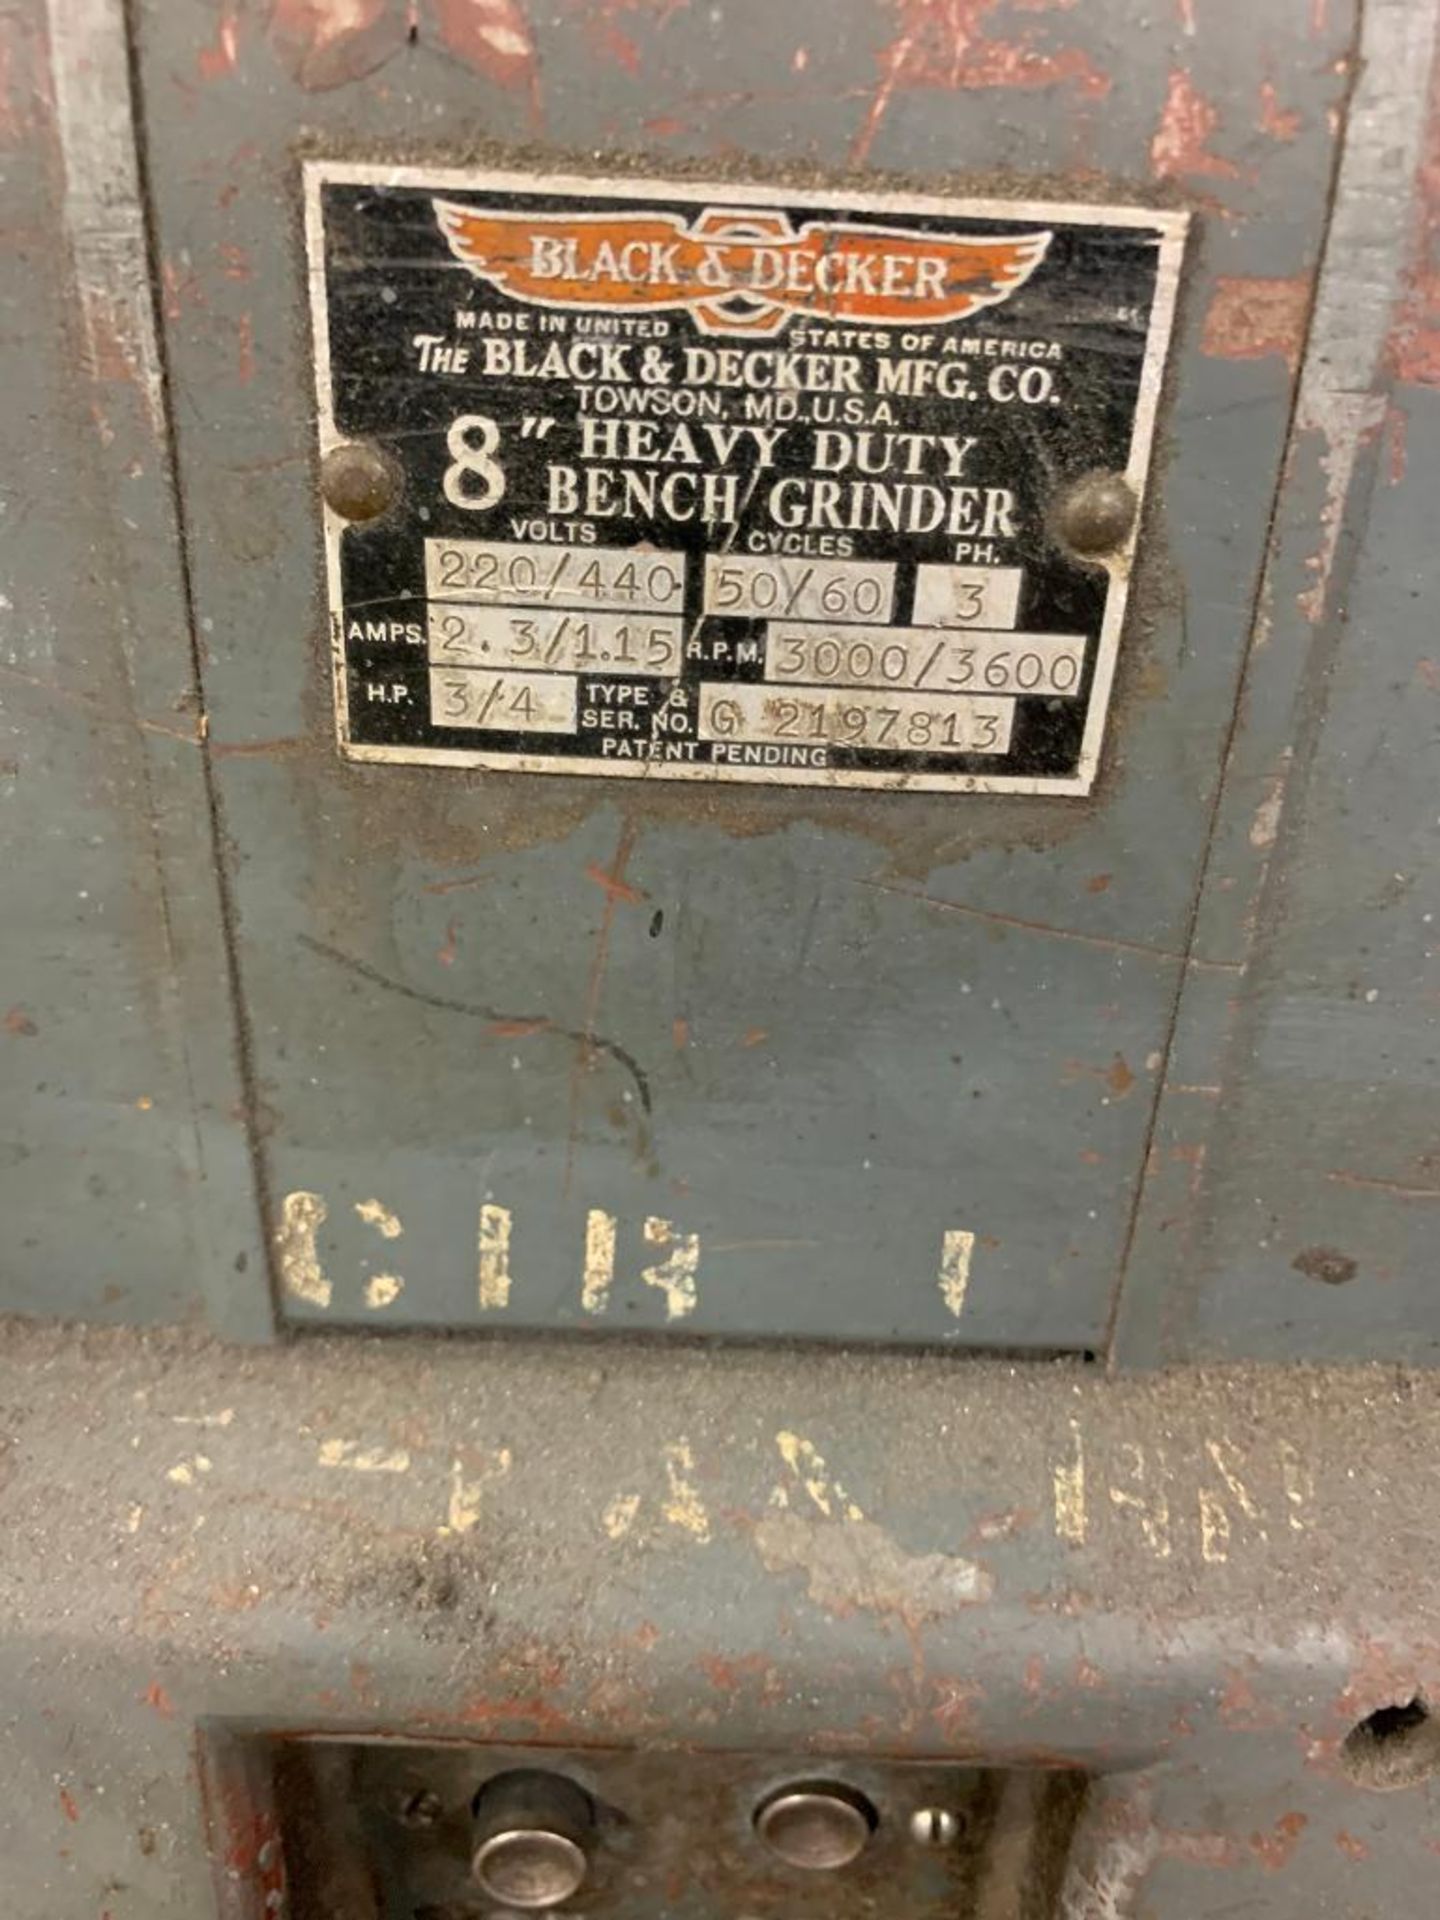 Black & Decker 8" Double-End Bench Grinder, 3/4-HP, 220/440 V, 3000/3600 RPM - Image 3 of 3